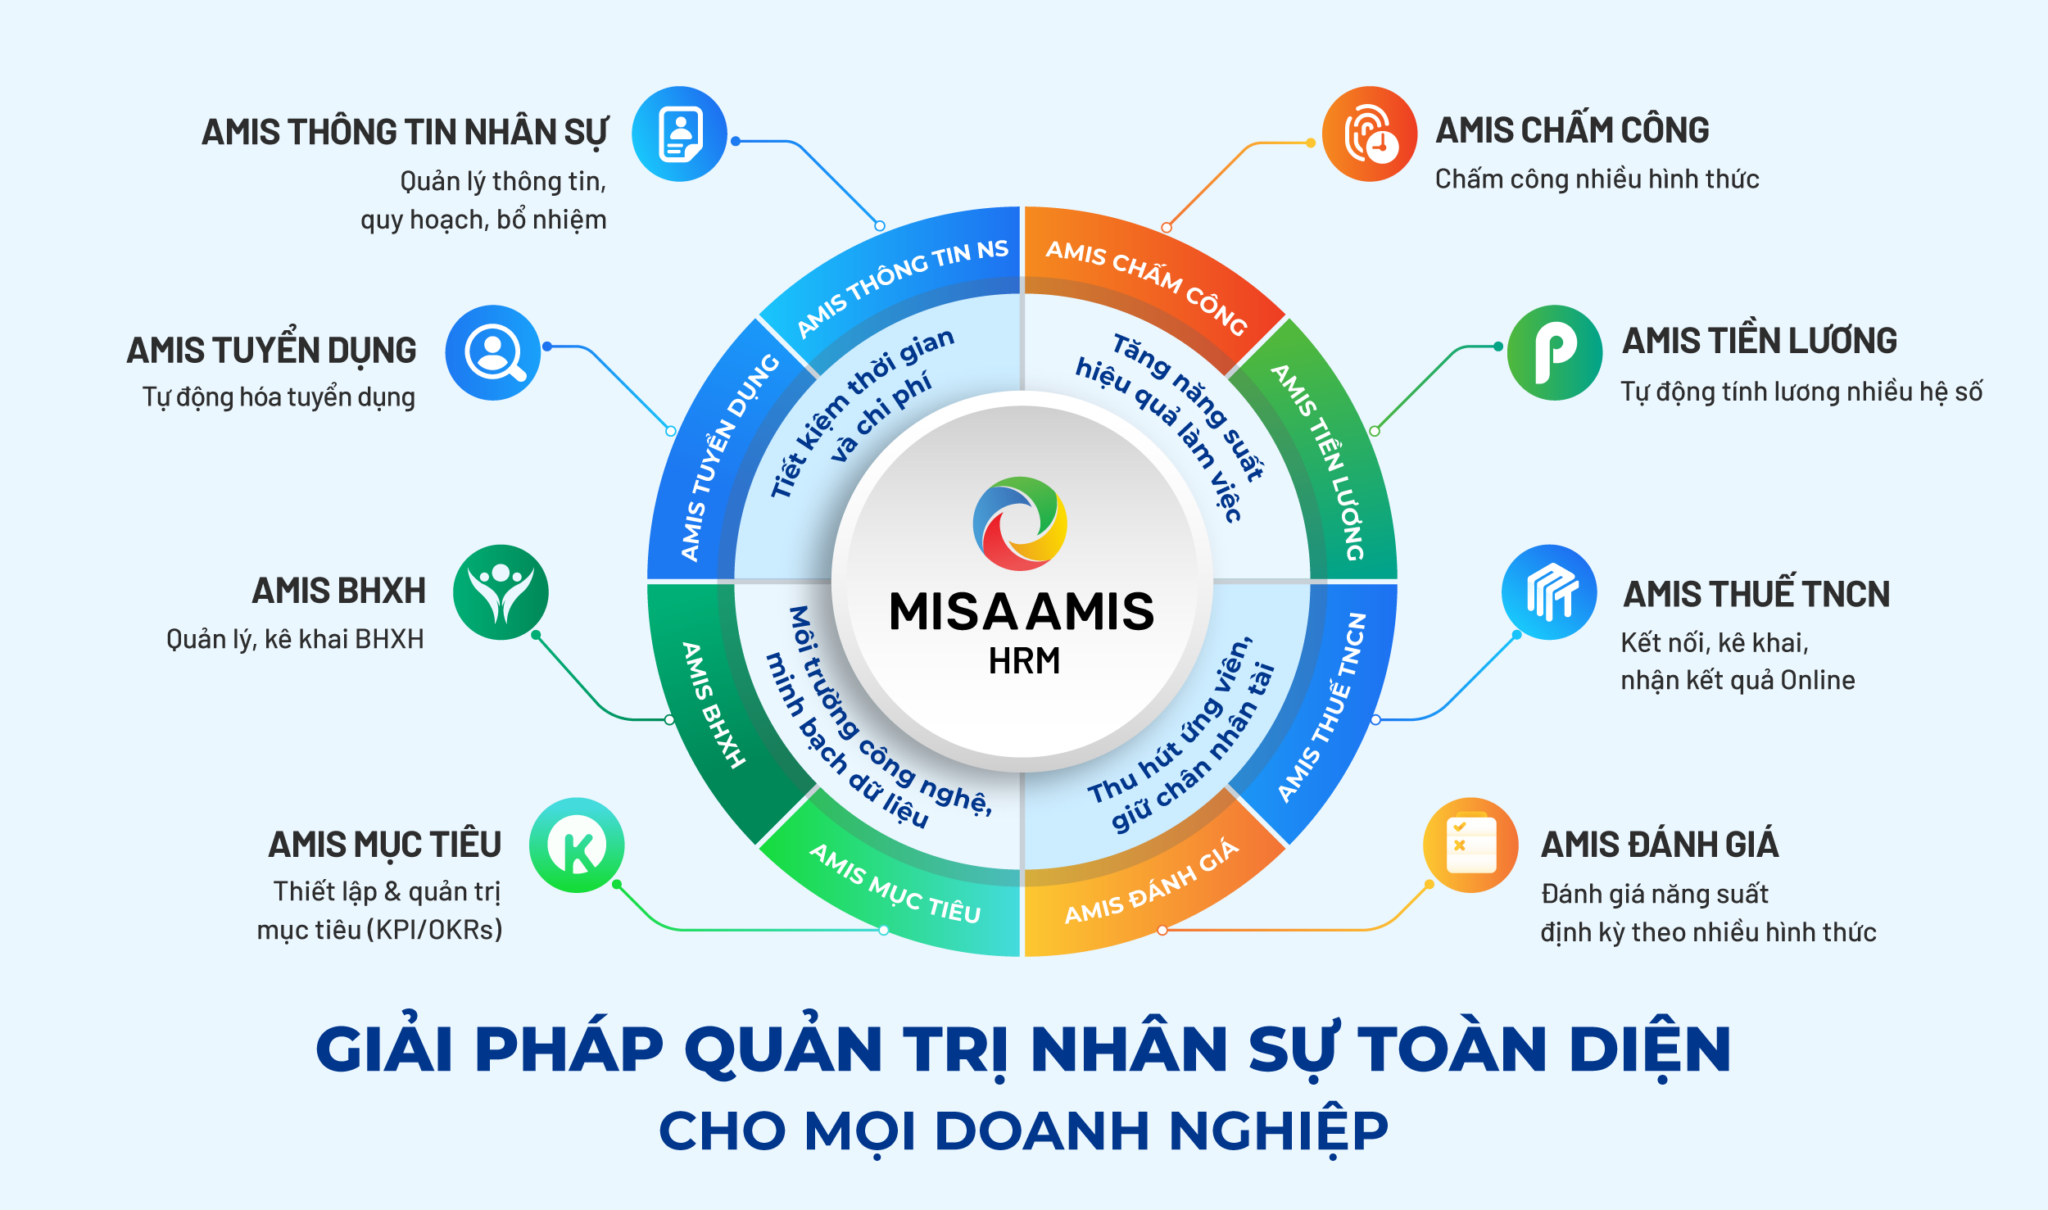 Phần mềm quản lý tổng thể doanh nghiệp AMIS Misa